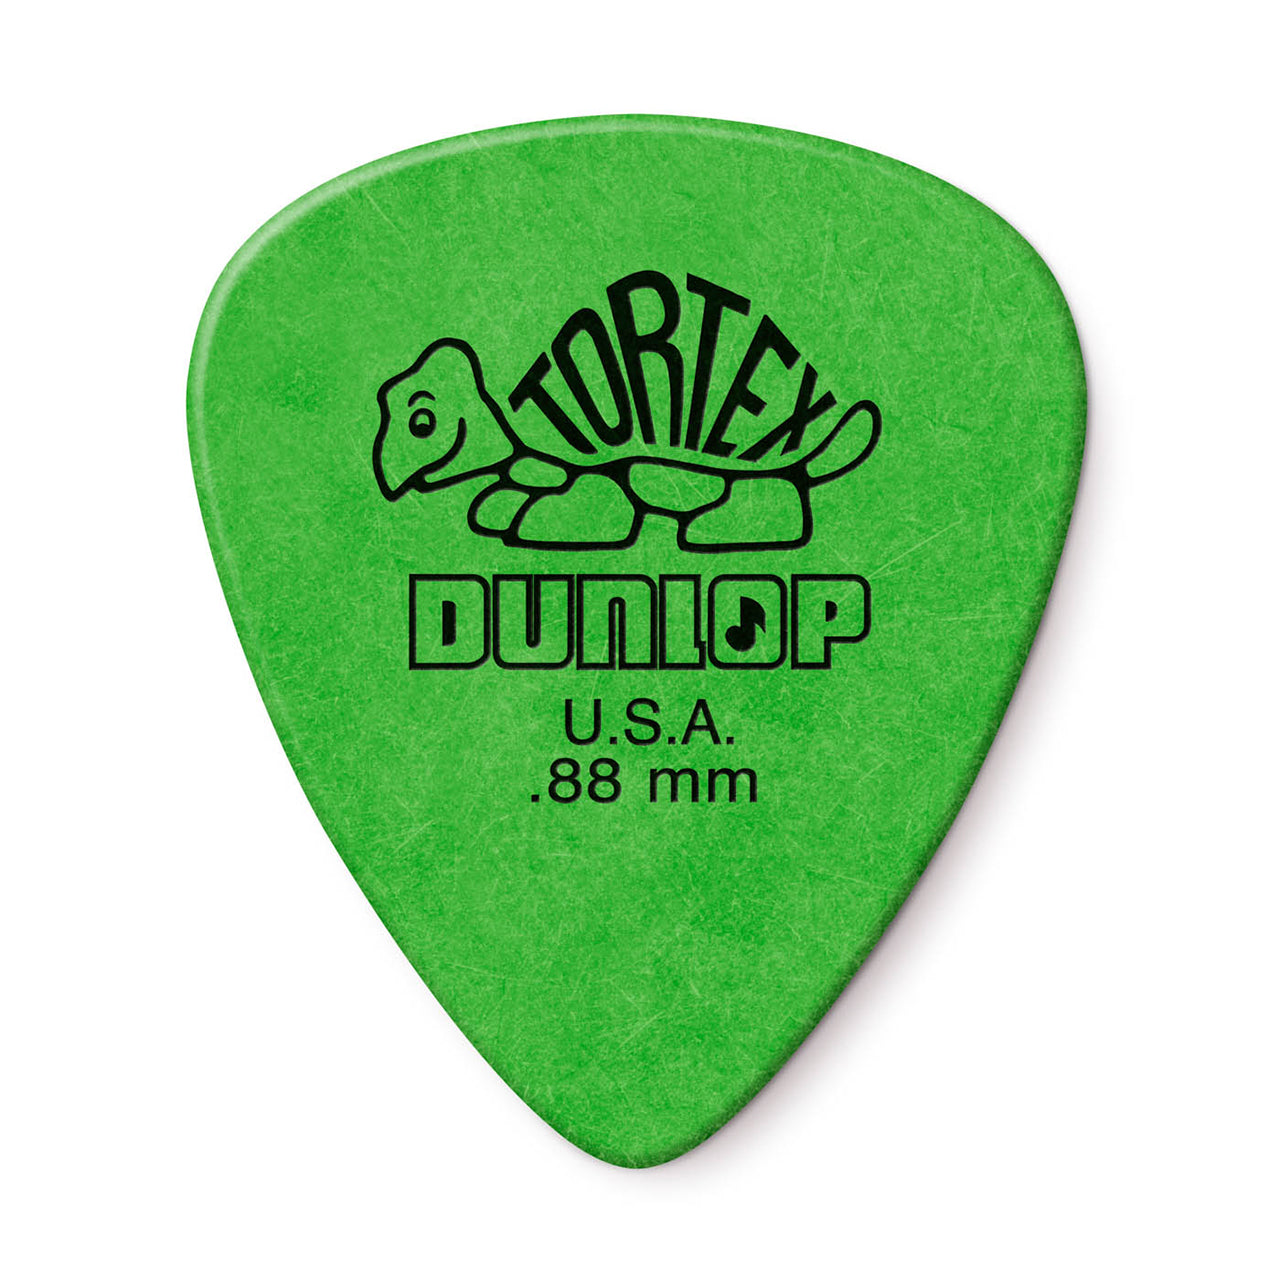 Dunlop Tortex Standard .88mm Guitar Pick, 12-Pack